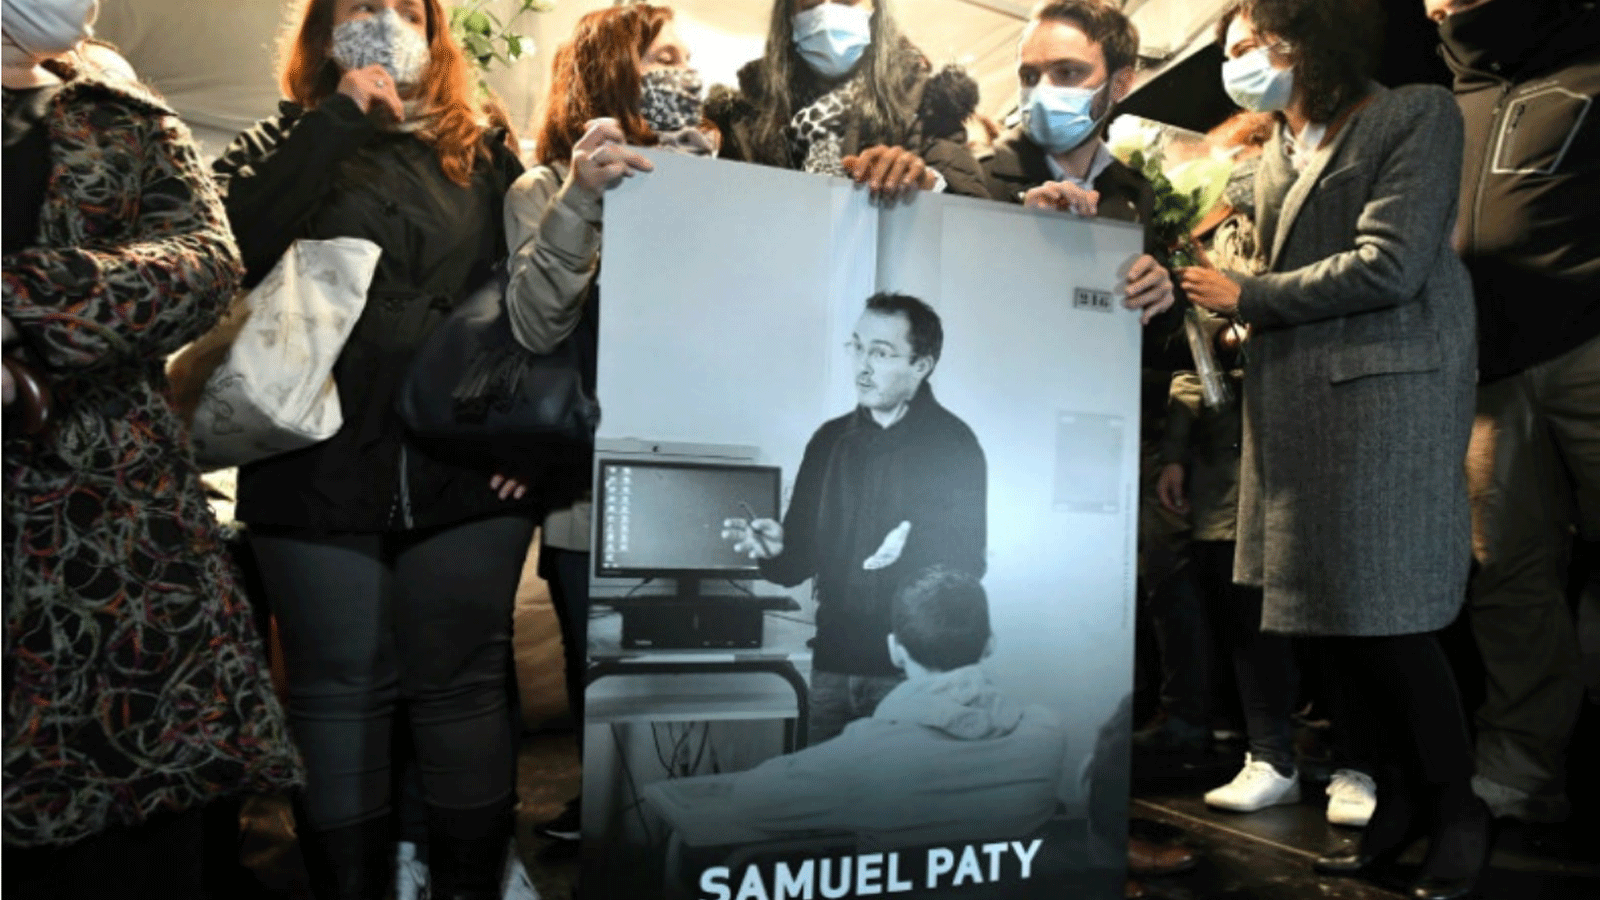 الأقارب والزملاء يحملون صورة صموئيل باتي في مسيرة صامتة في كونفلانس سانت أونورين حيث كان يعمل مدرسًا للتاريخ قبل مقتله.